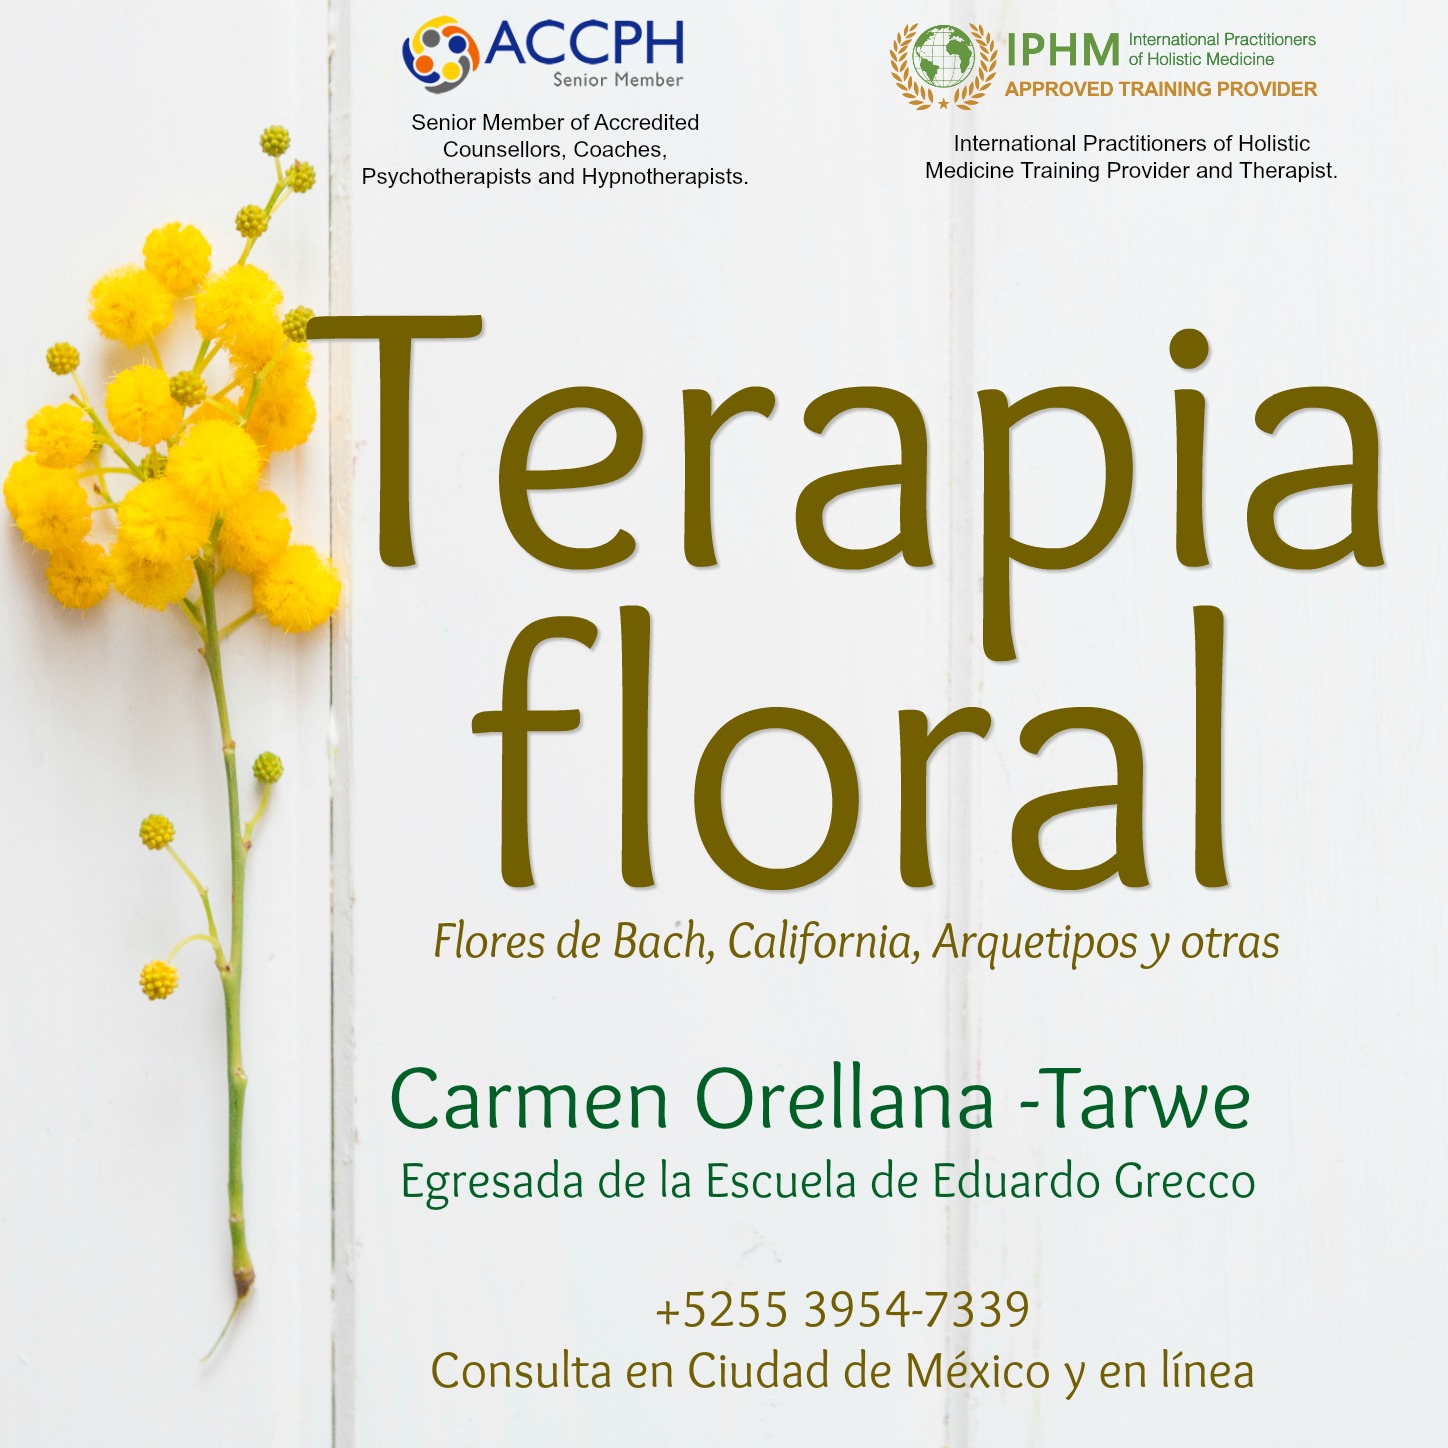 Carmen Orellana-Tarwe logo